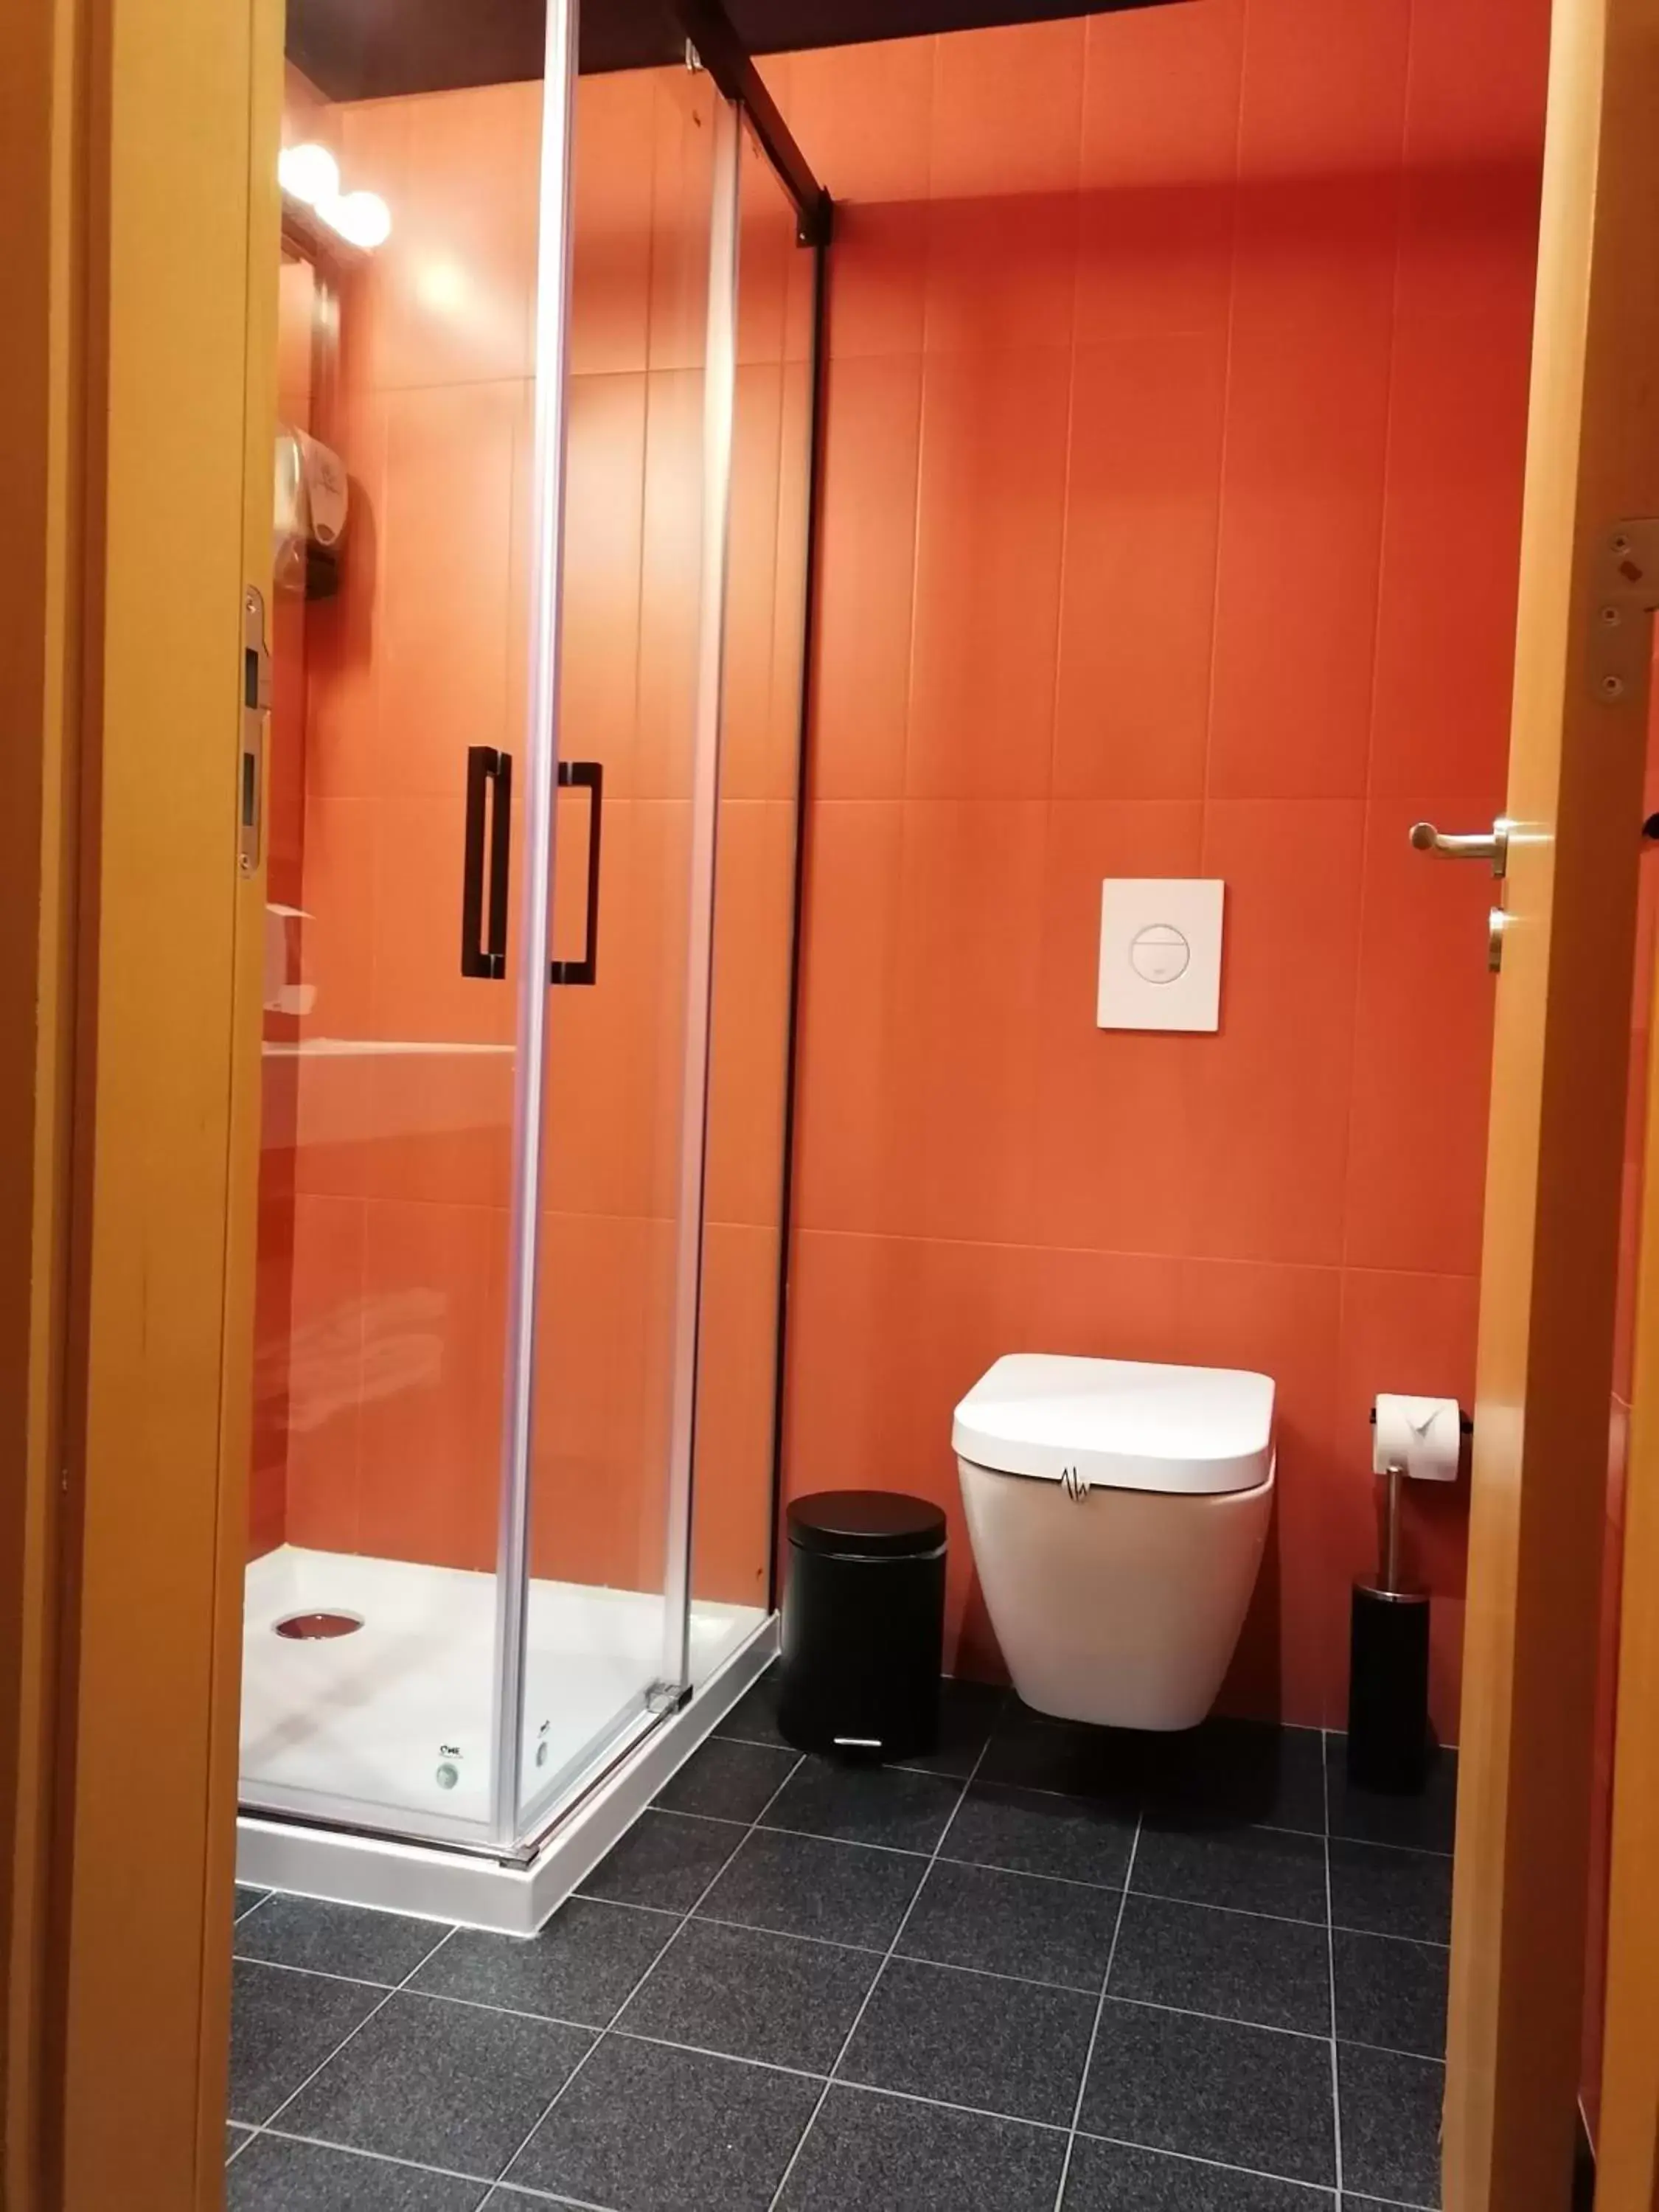 Bathroom in Basic Braga by Axis